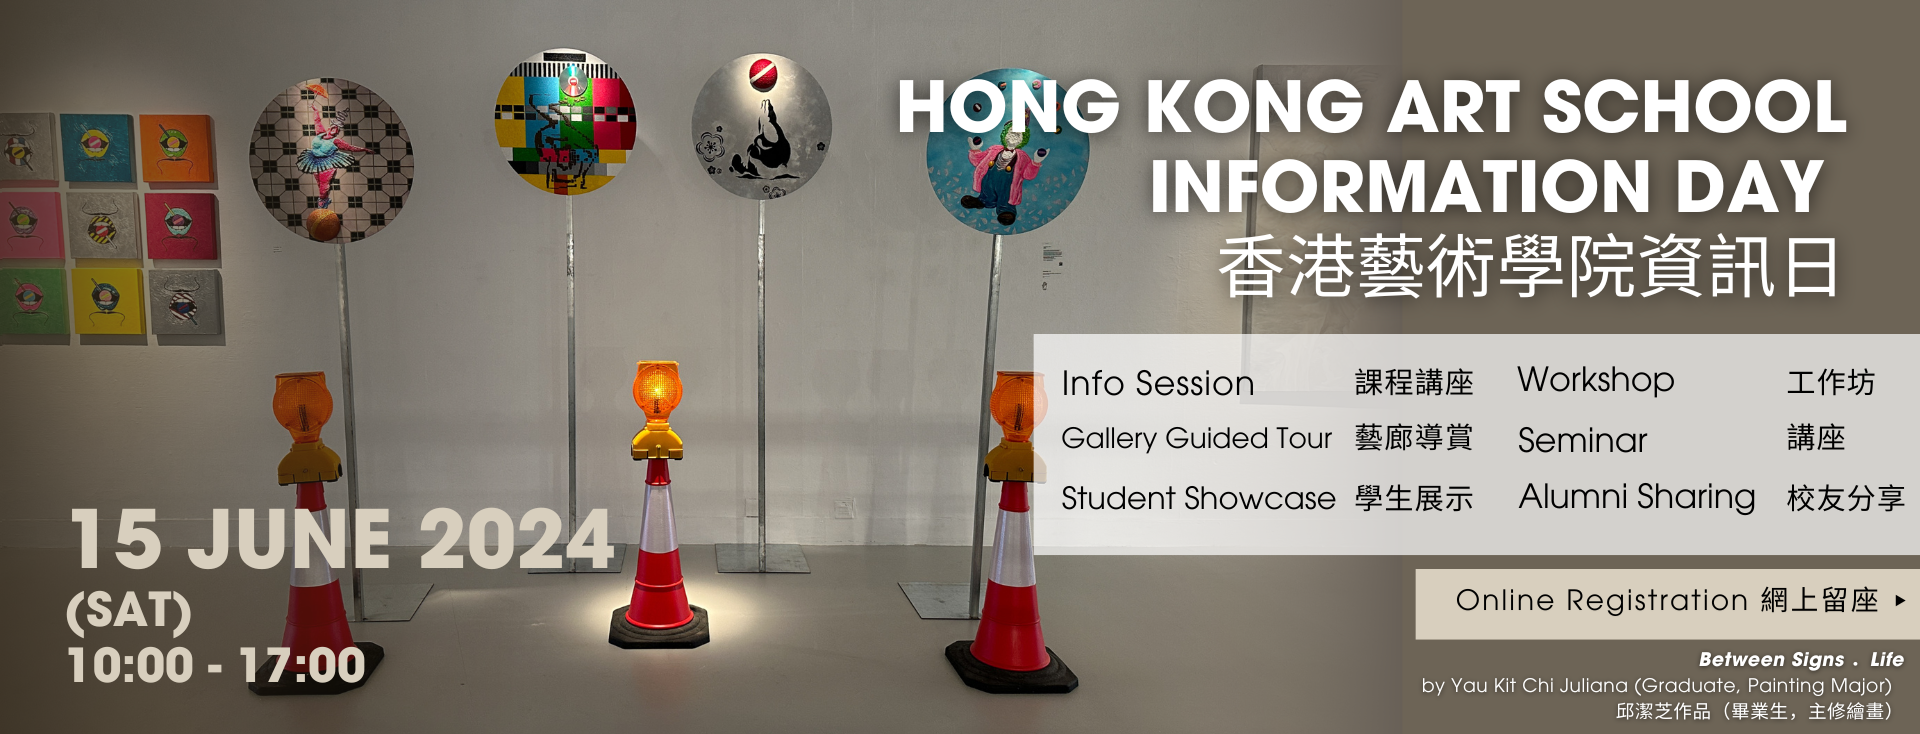 Hong Kong Art School Info Day 2024